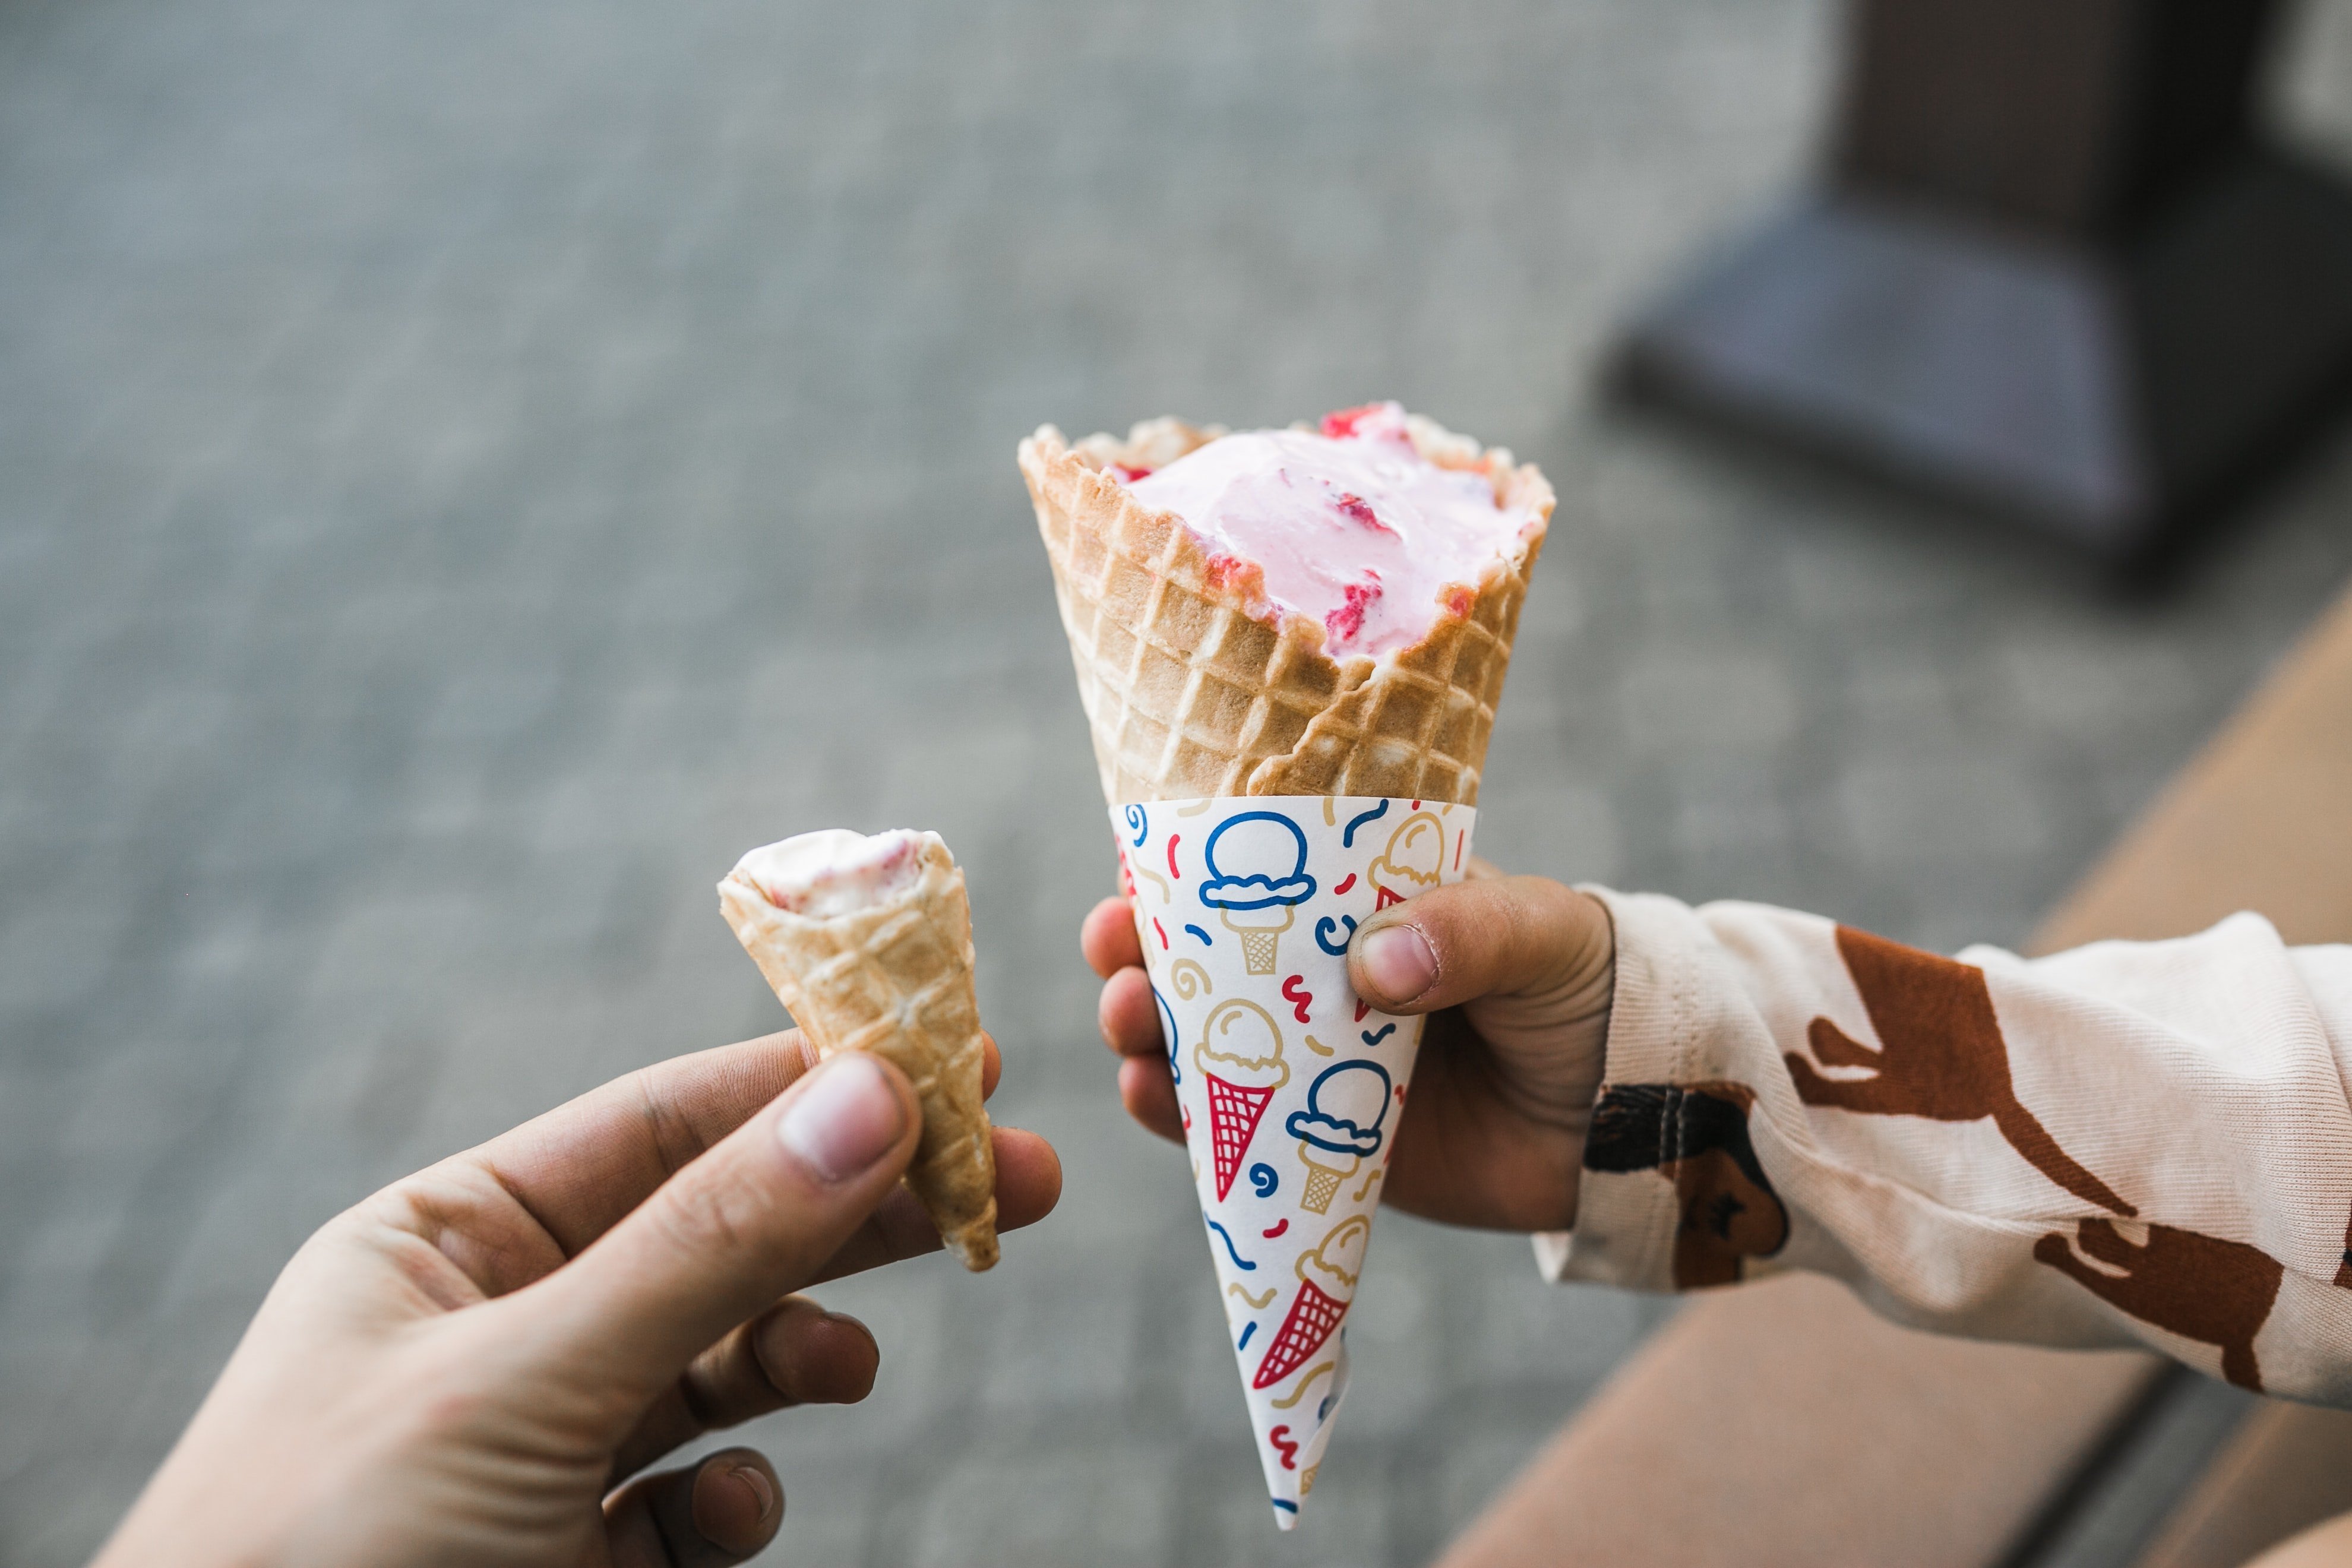 В каком году сделали мороженое. Мороженое рожок. Мороженое в руке. Мороженое рожок в руке. Мороженое маленький рожок.